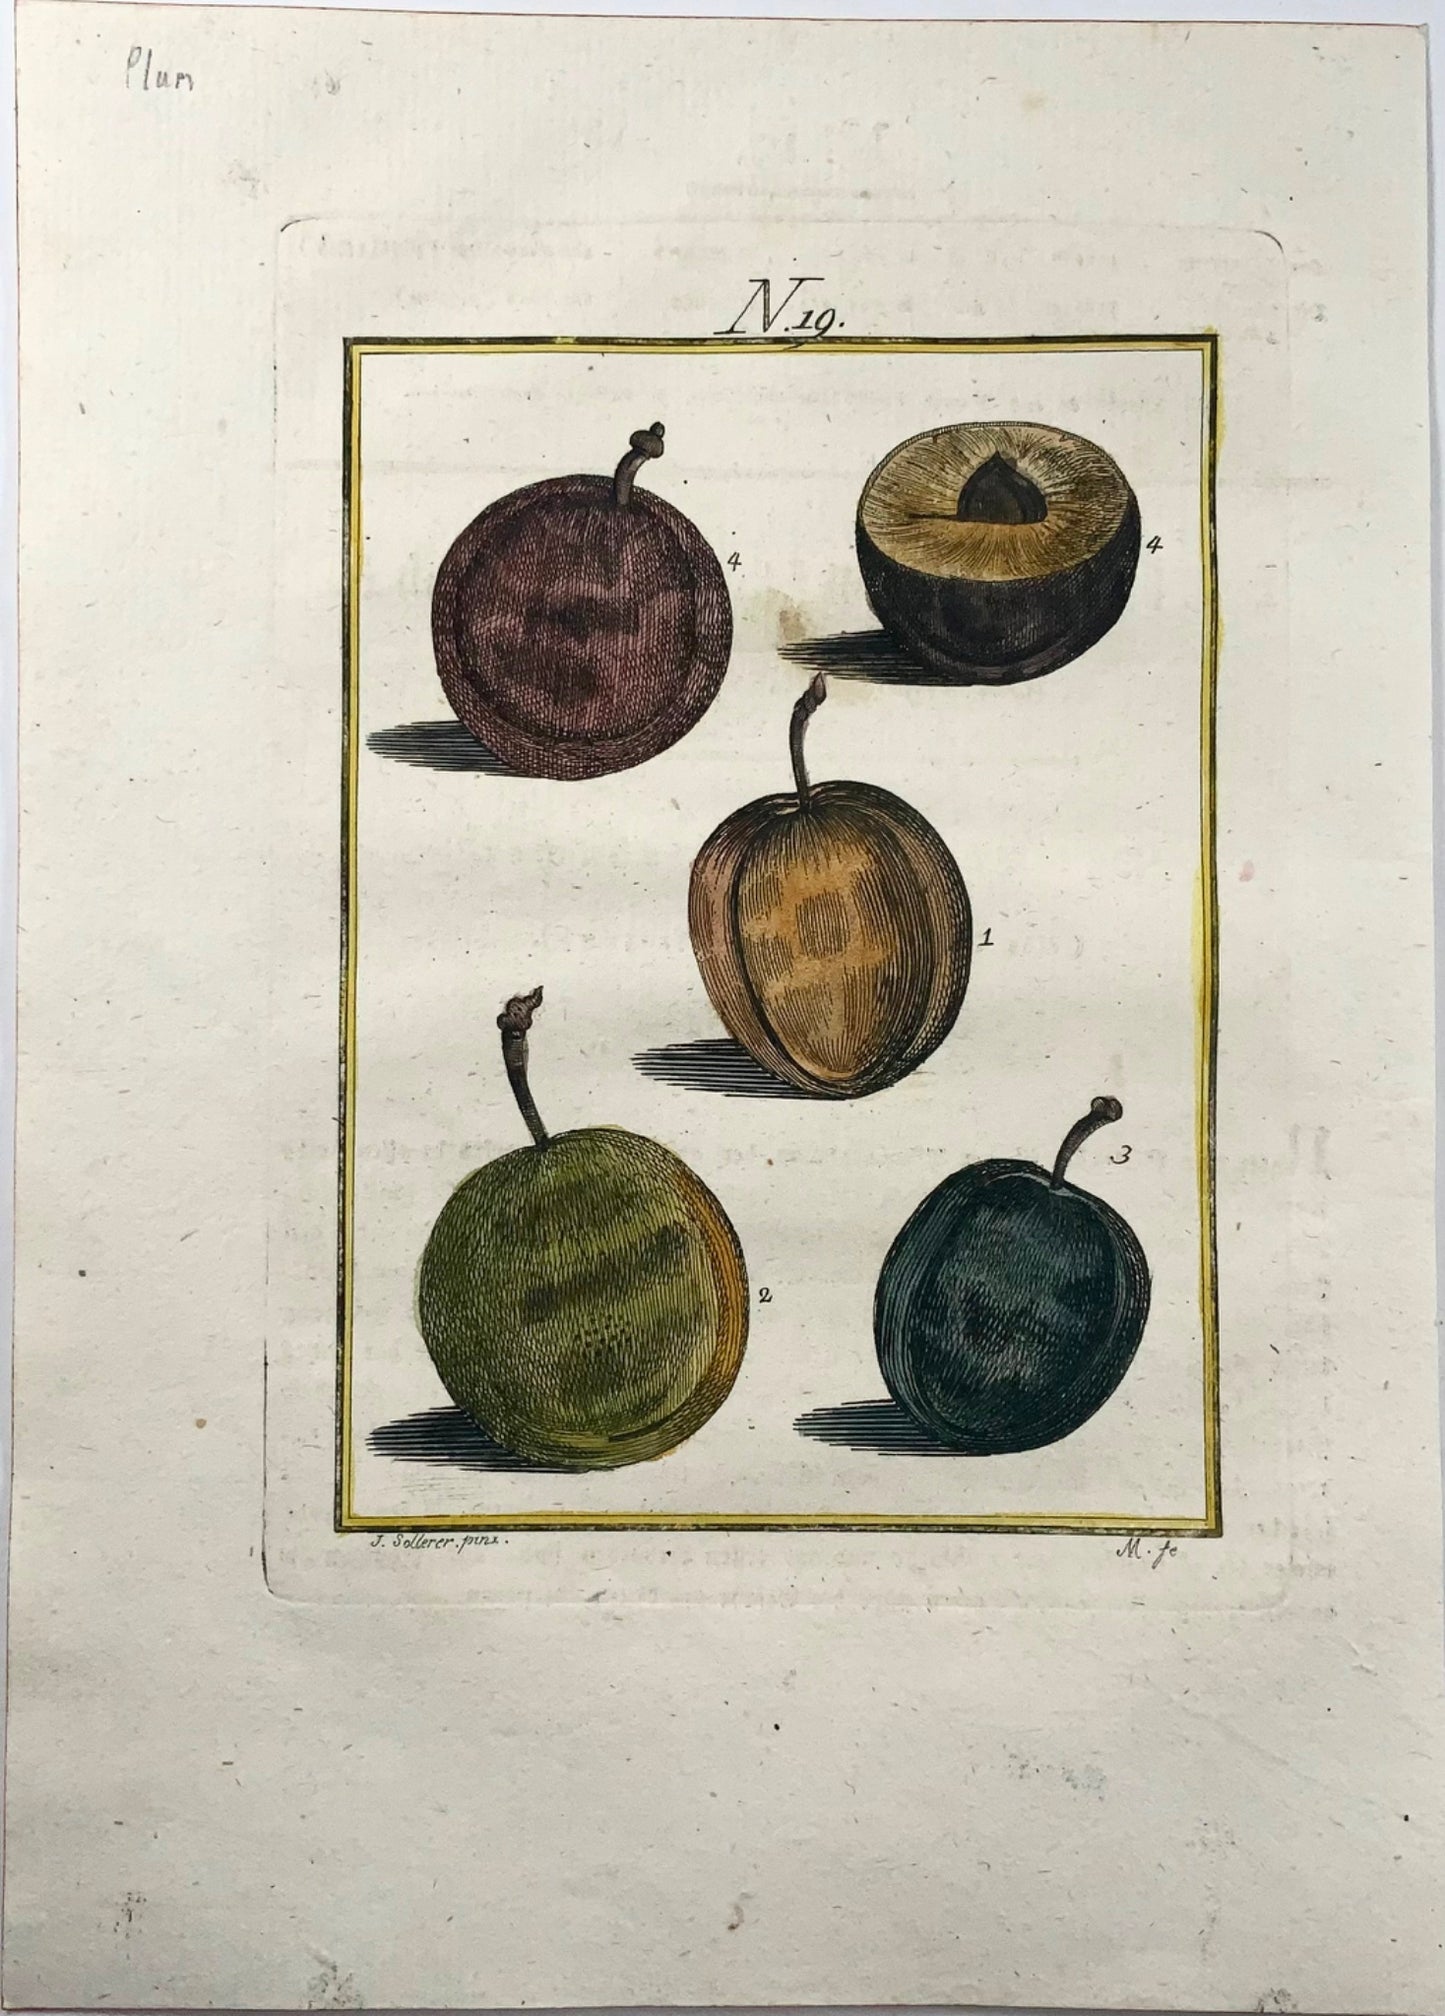 1790 Susino, frutto - Joh. Incisione colorata a mano di Sollerer